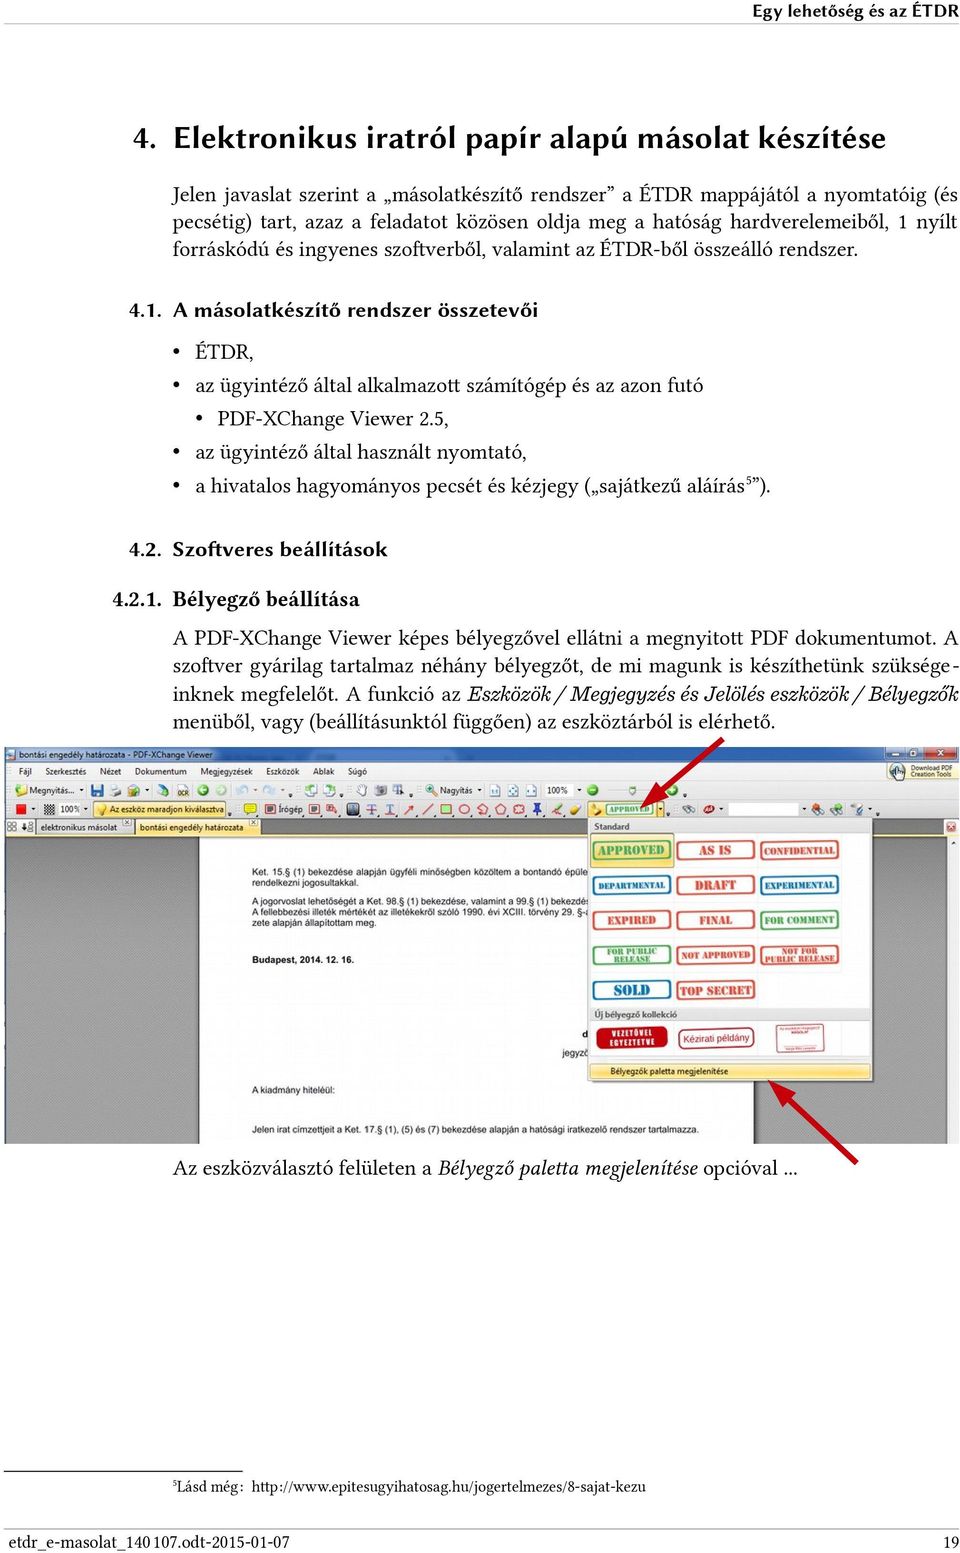 hardverelemeiből, 1 nyílt forráskódú és ingyenes szoftverből, valamint az ÉTDR-ből összeálló rendszer. 4.1. A másolatkészítő rendszer összetevői ÉTDR, az ügyintéző által alkalmazott számítógép és az azon futó PDF-XChange Viewer 2.